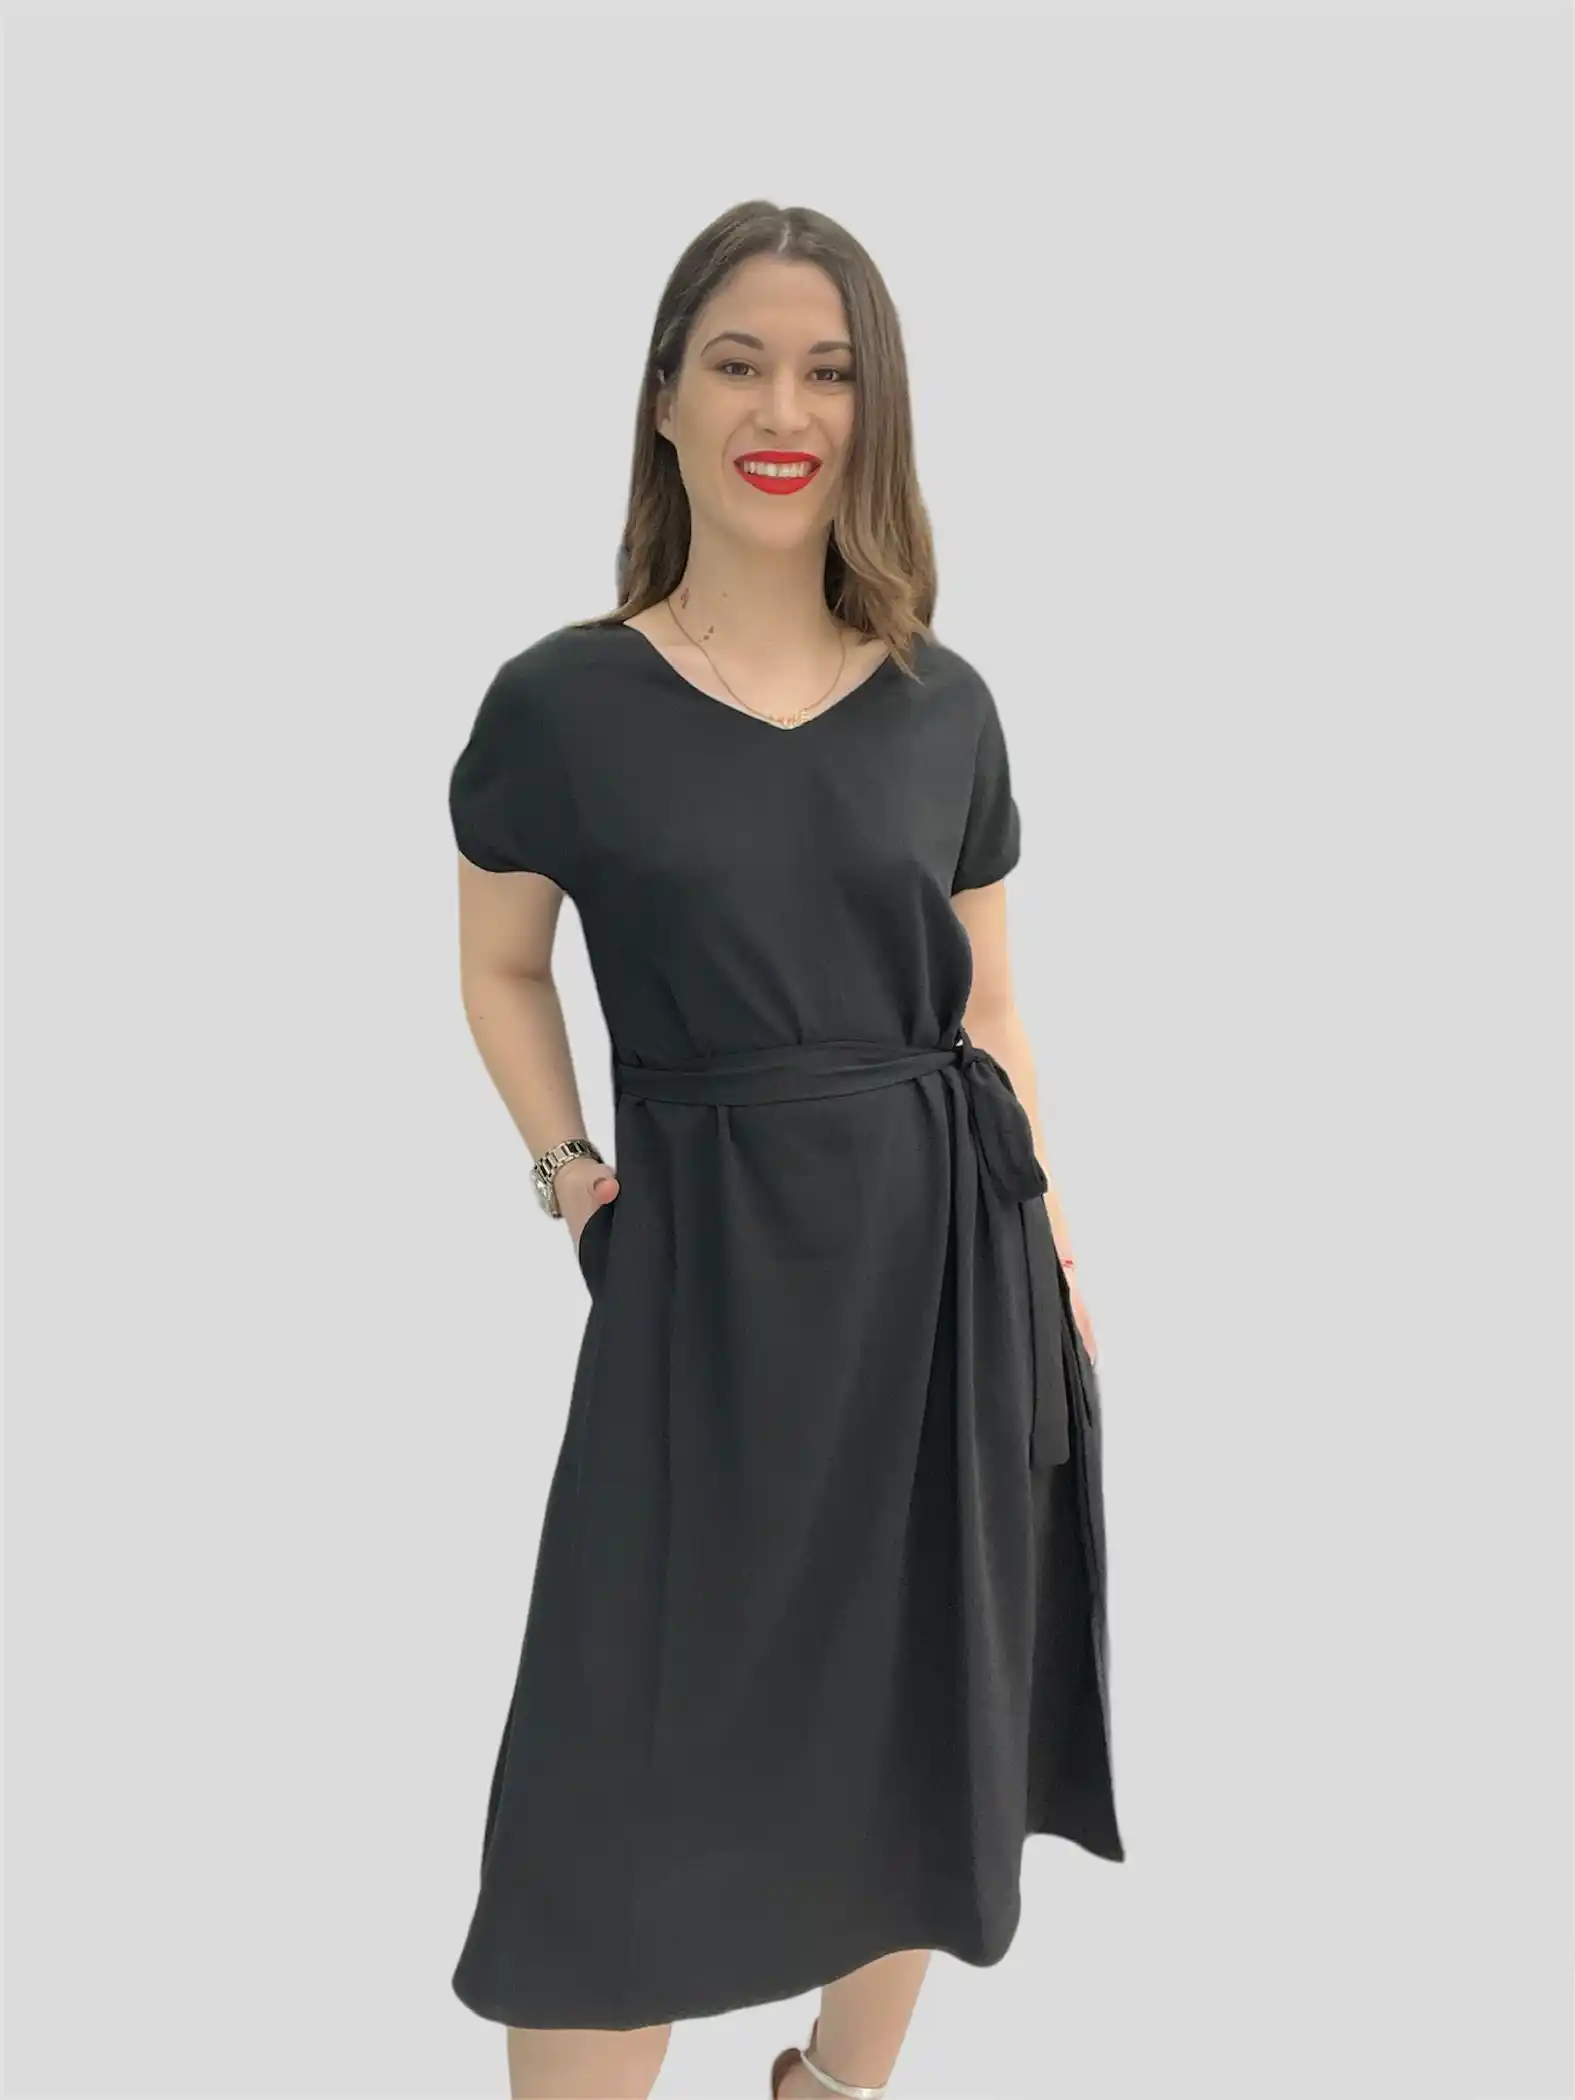 Γυναικείο Φόρεμα Μαύρο Με Κοντό Μανίκι